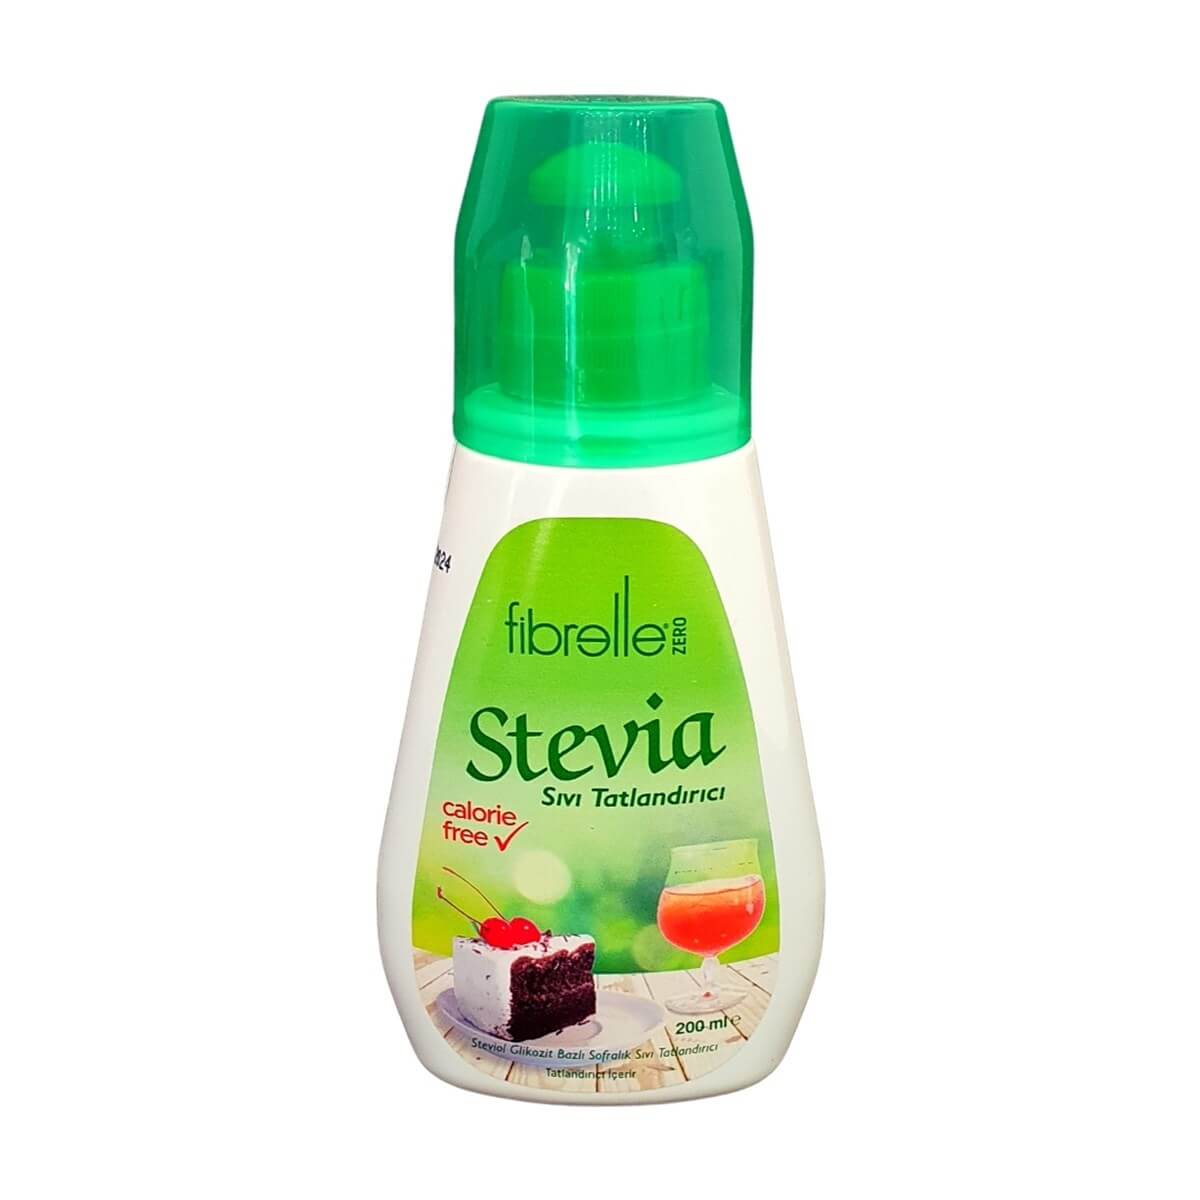  Fibrelle Stevia Sıvı Tatlandırıcı Sıfır Kalori 200 ml